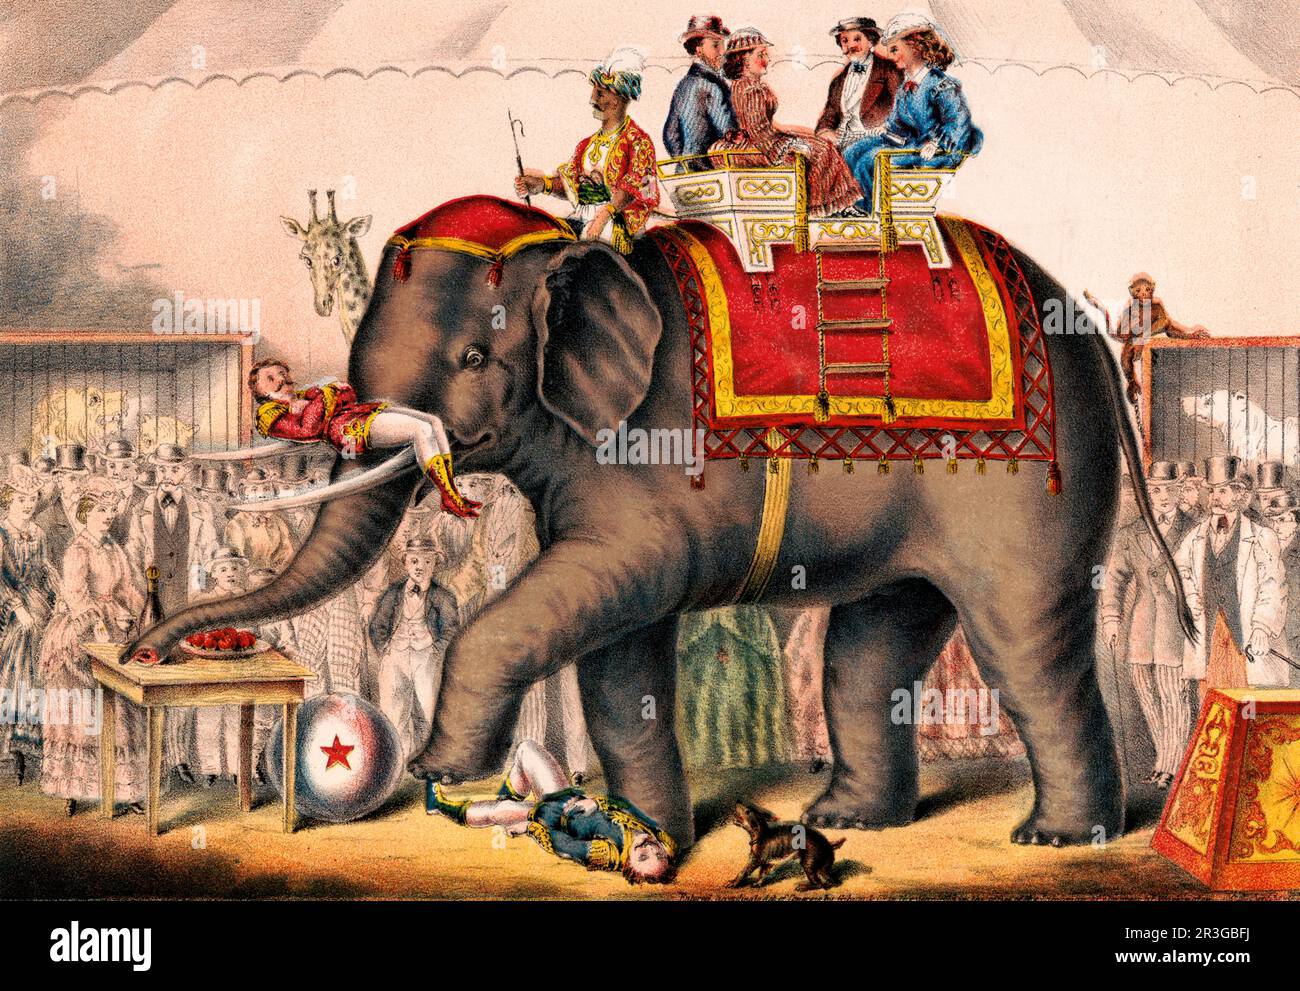 Stampa vintage di uomini che eseguono un atto circo con un elefante. Foto Stock